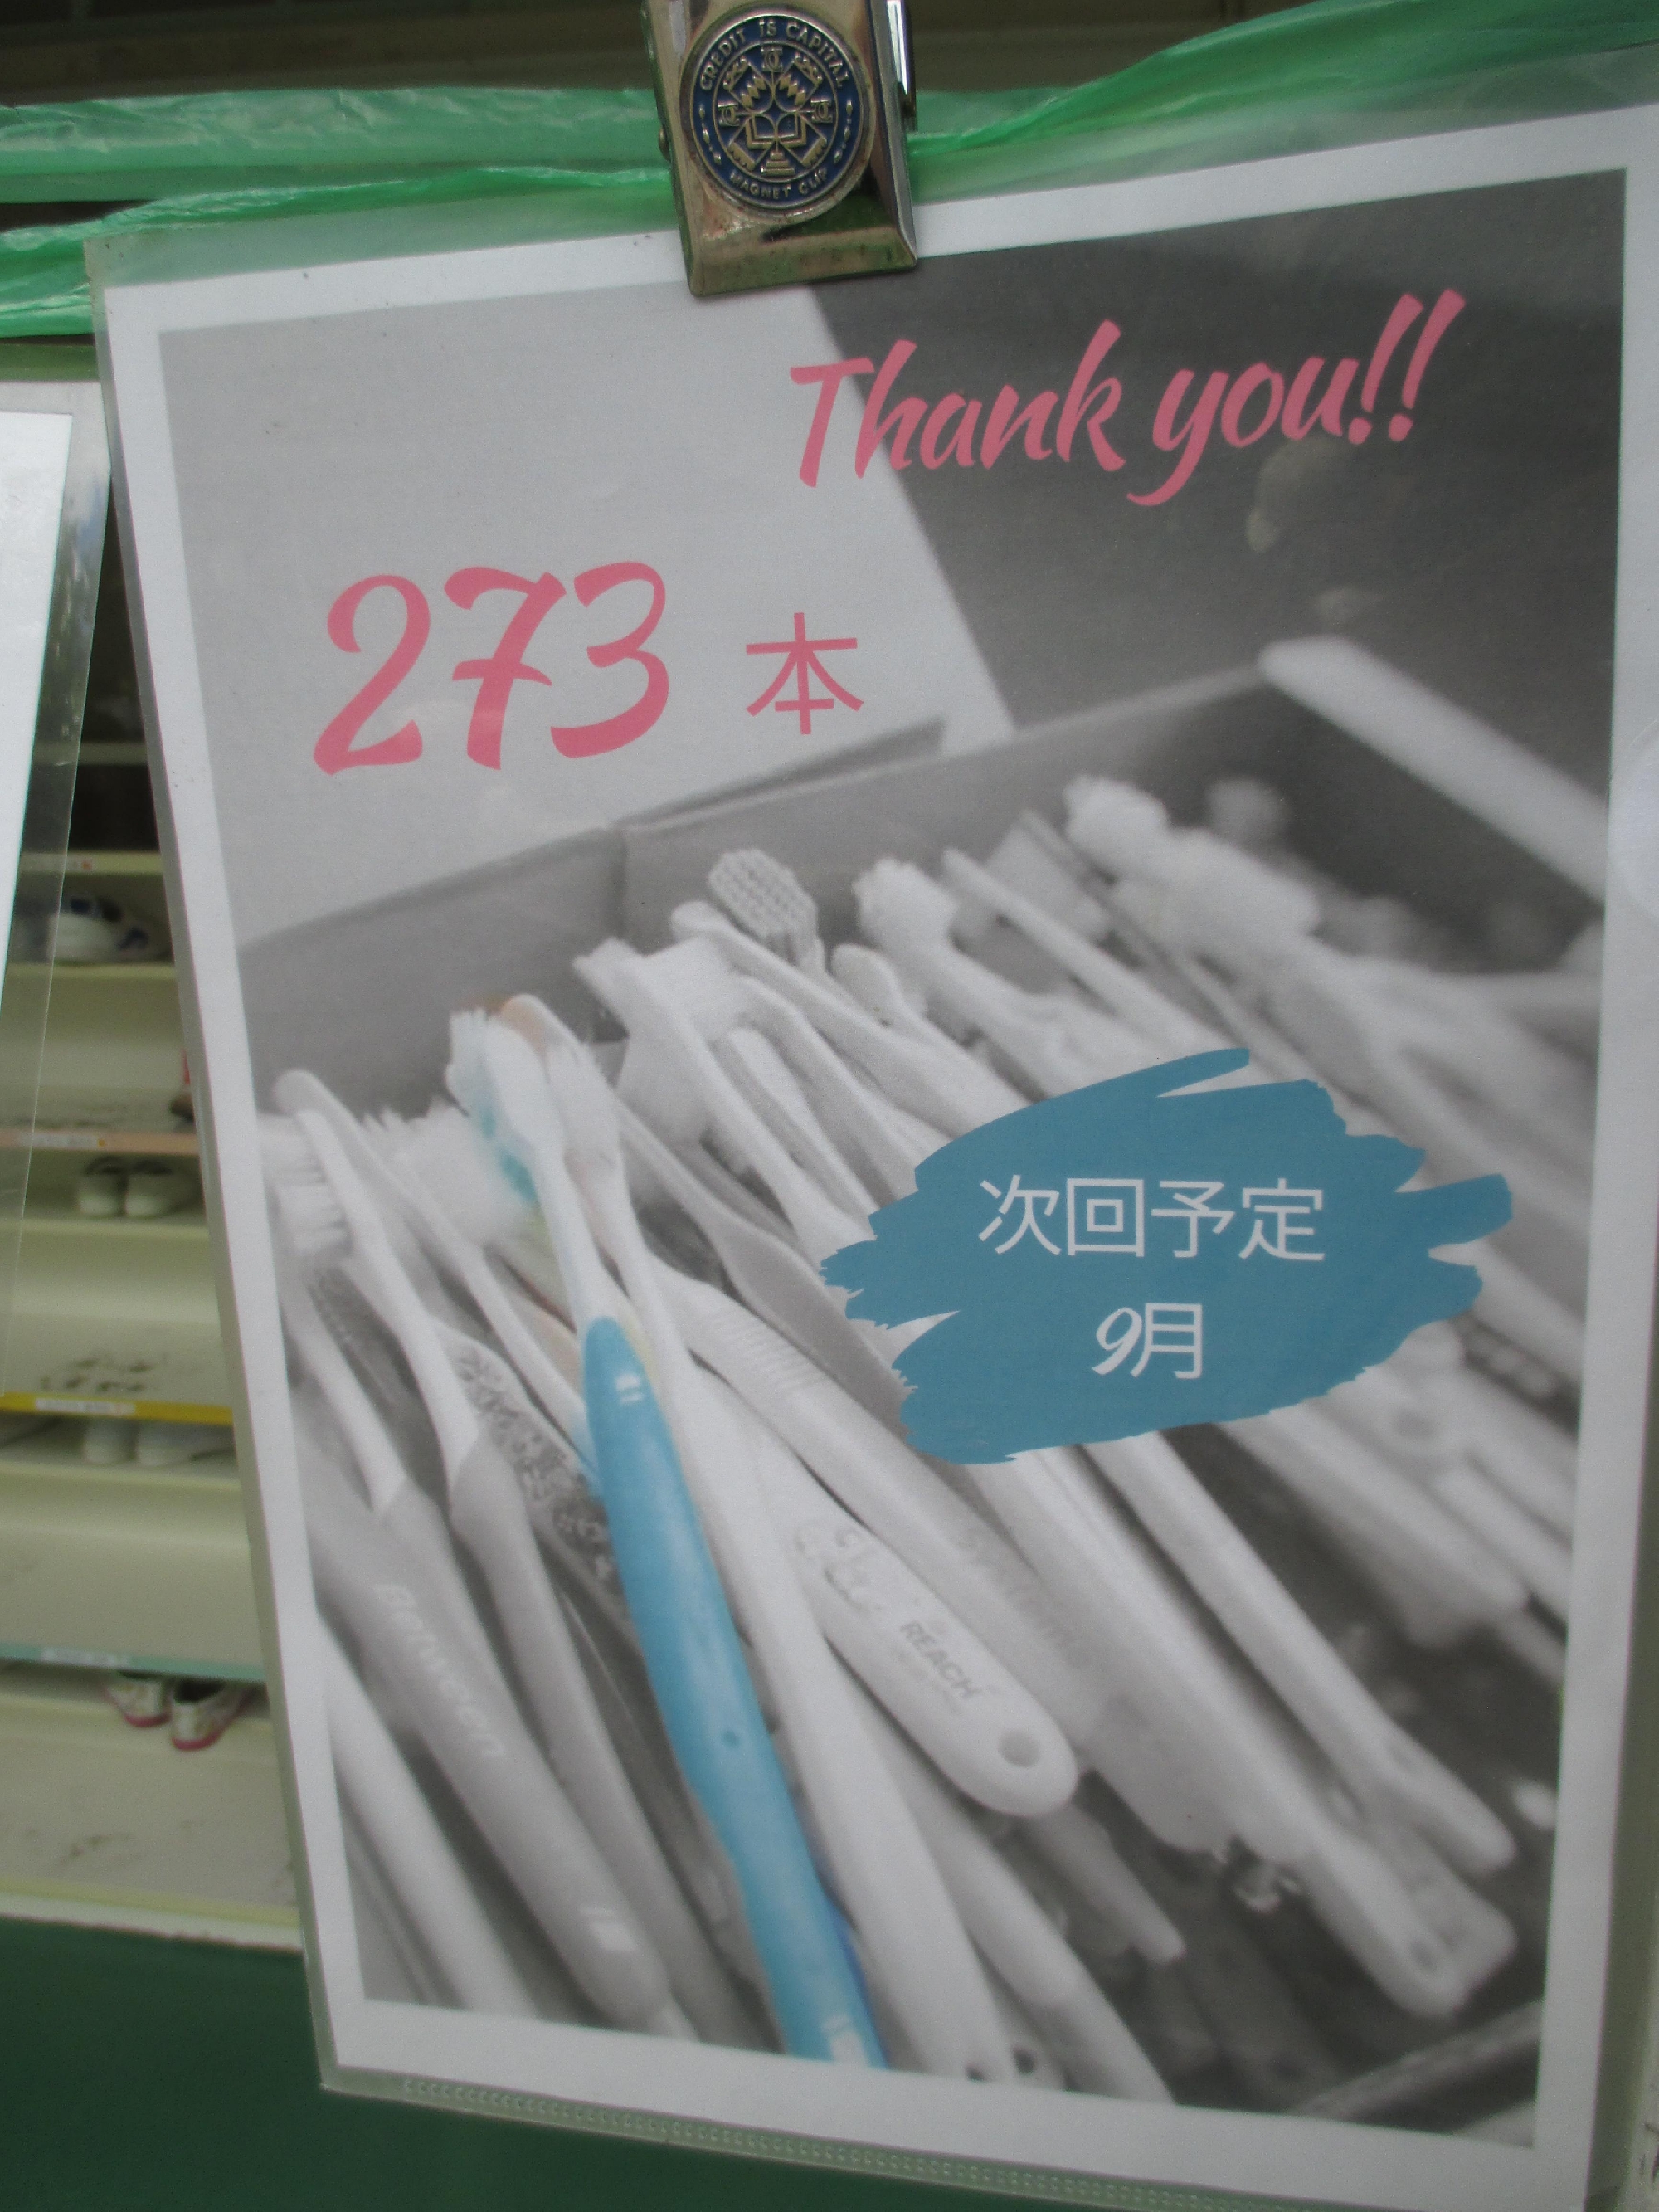 歯ブラシ回収プログラム、ご協力ありがとうございました。